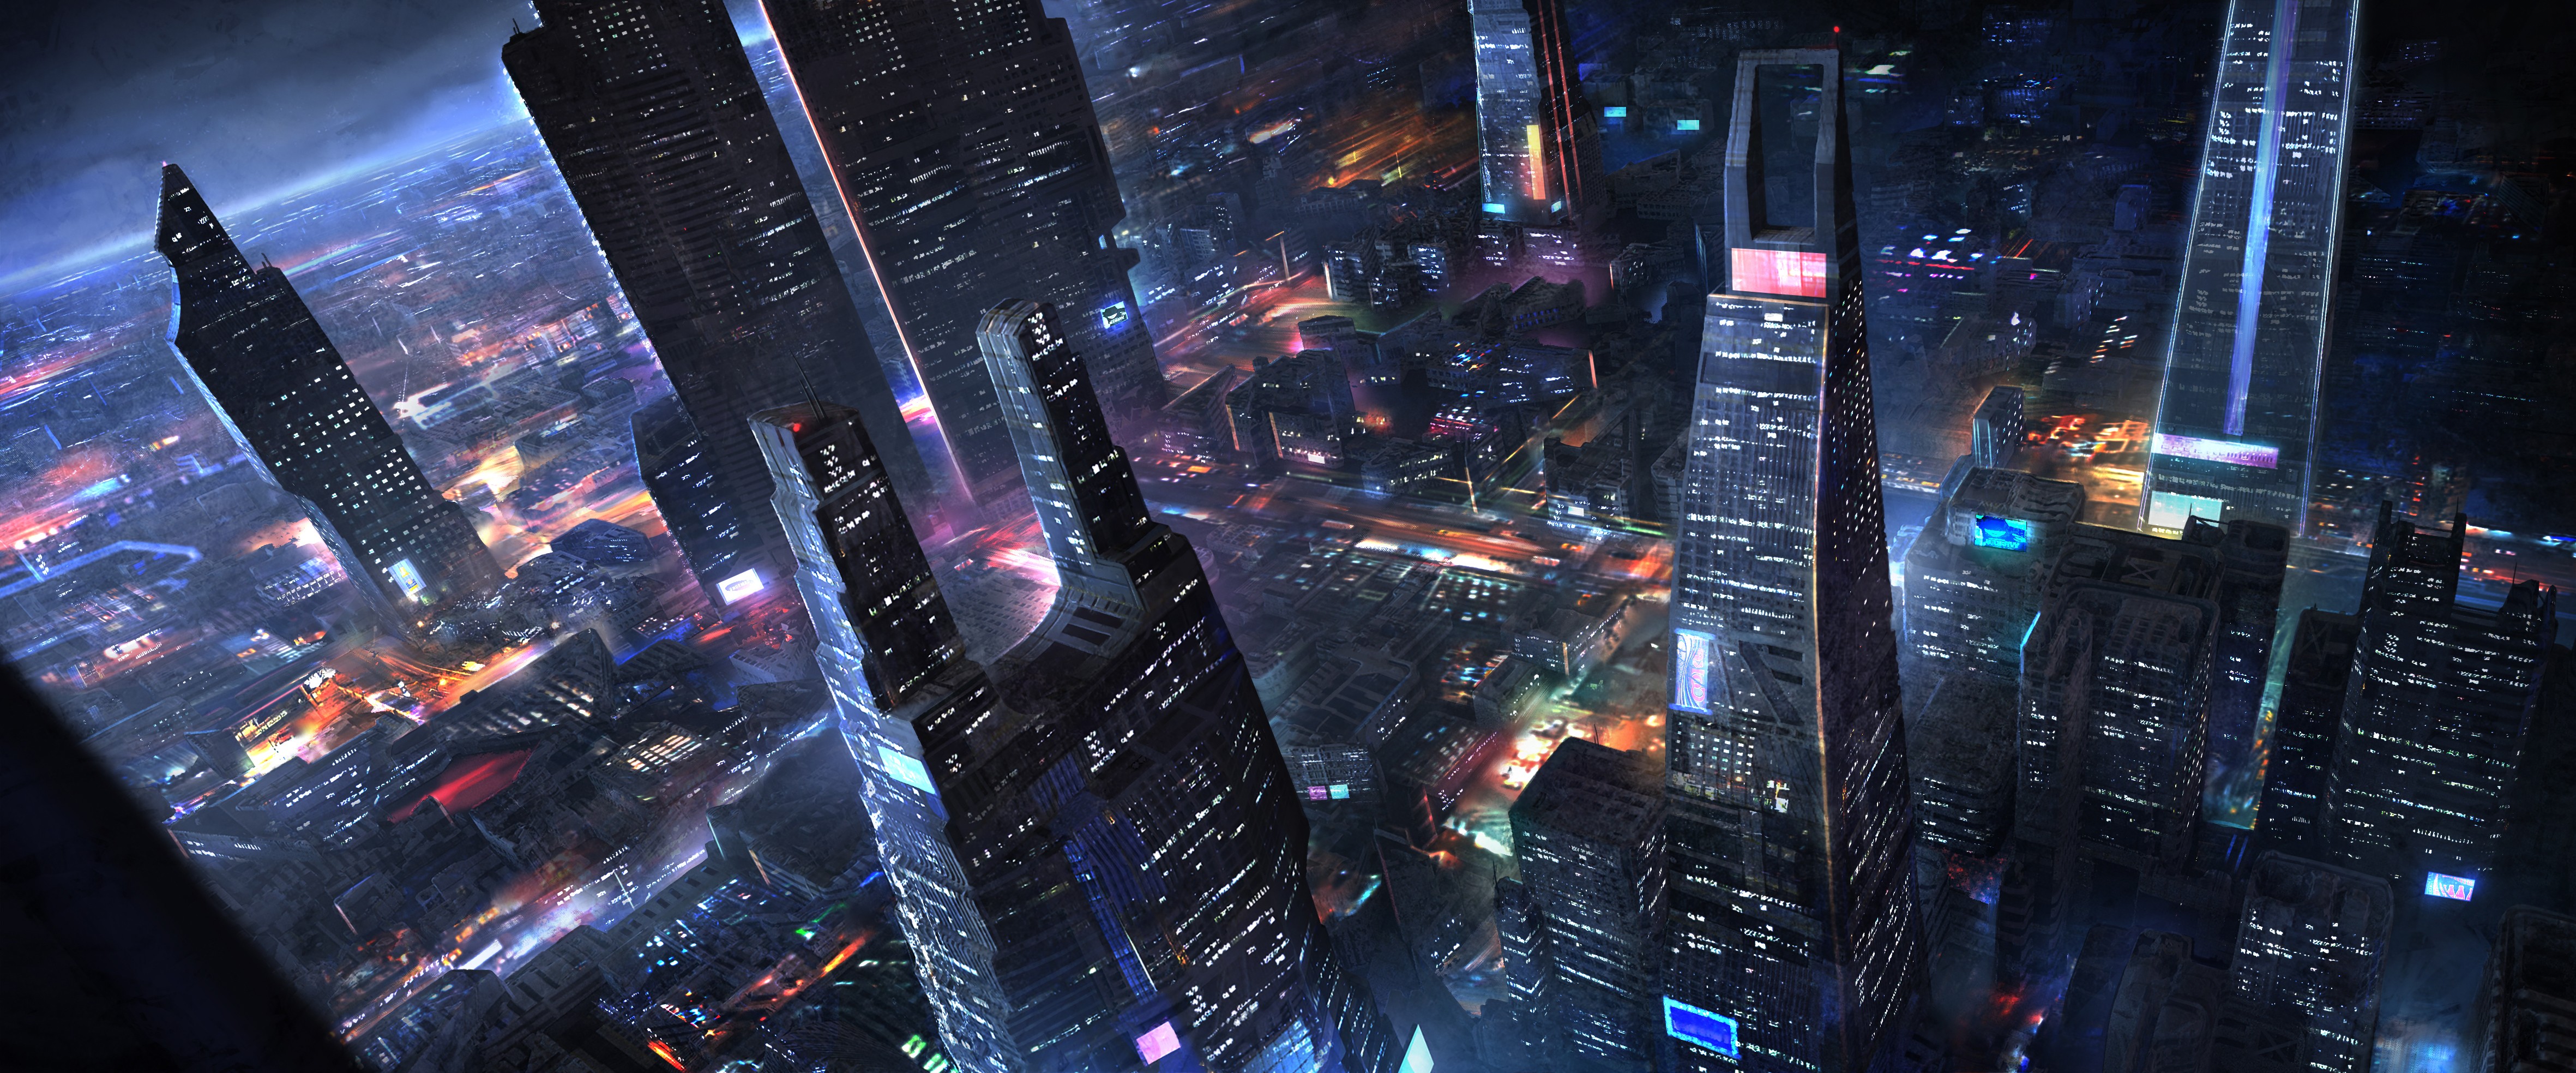 General 4724x1967 science fiction artwork futuristic cityscape aerial view night futuristic city